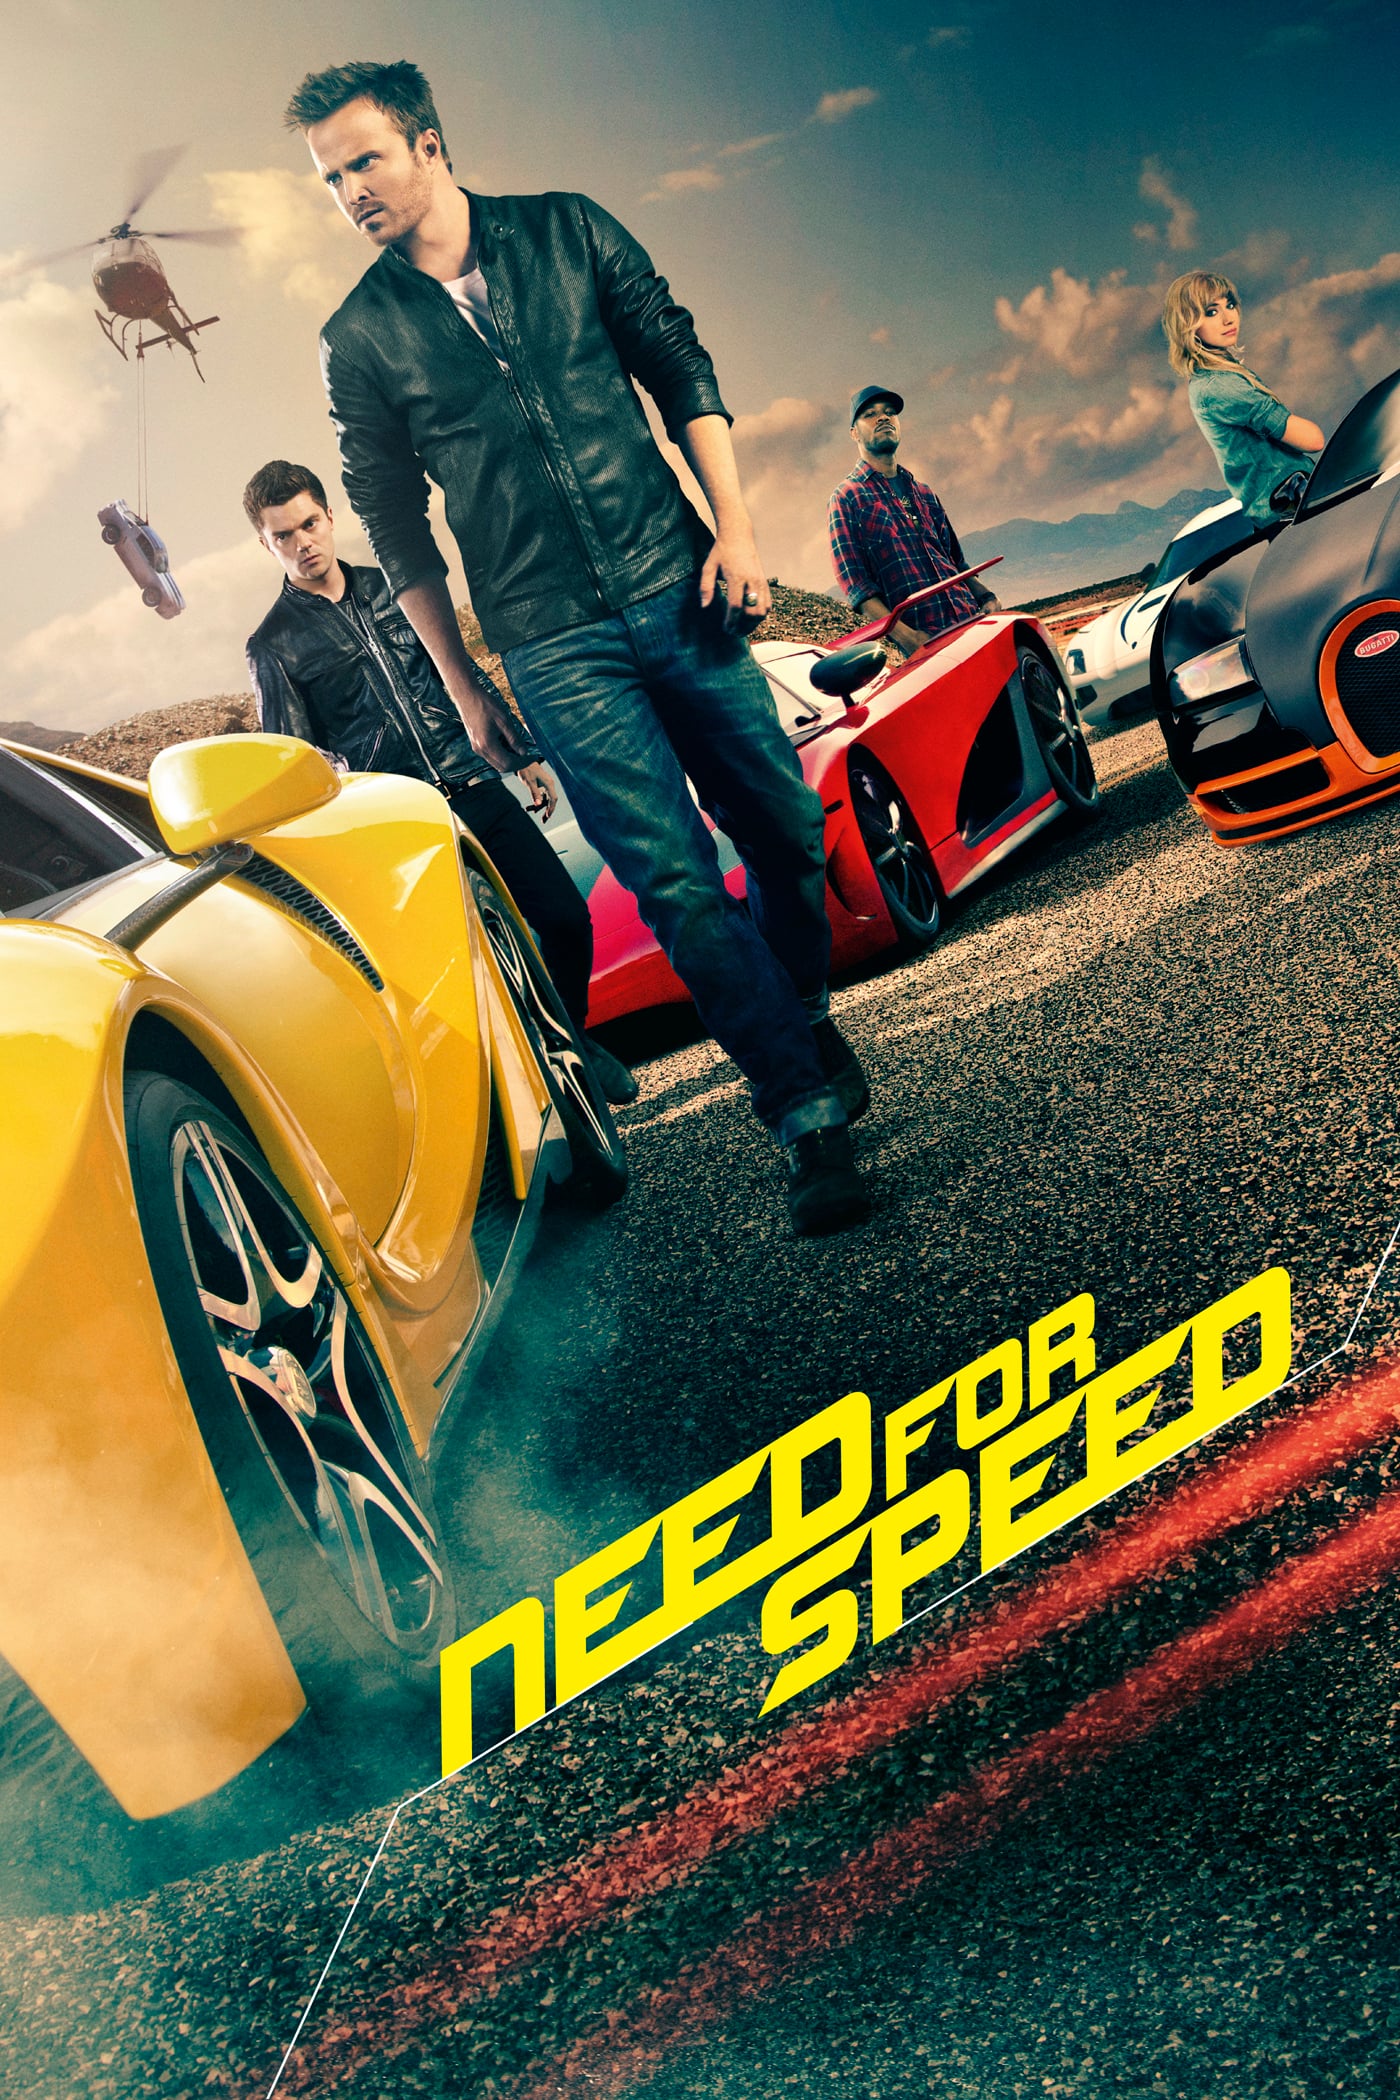 Plakat von "Need for Speed"